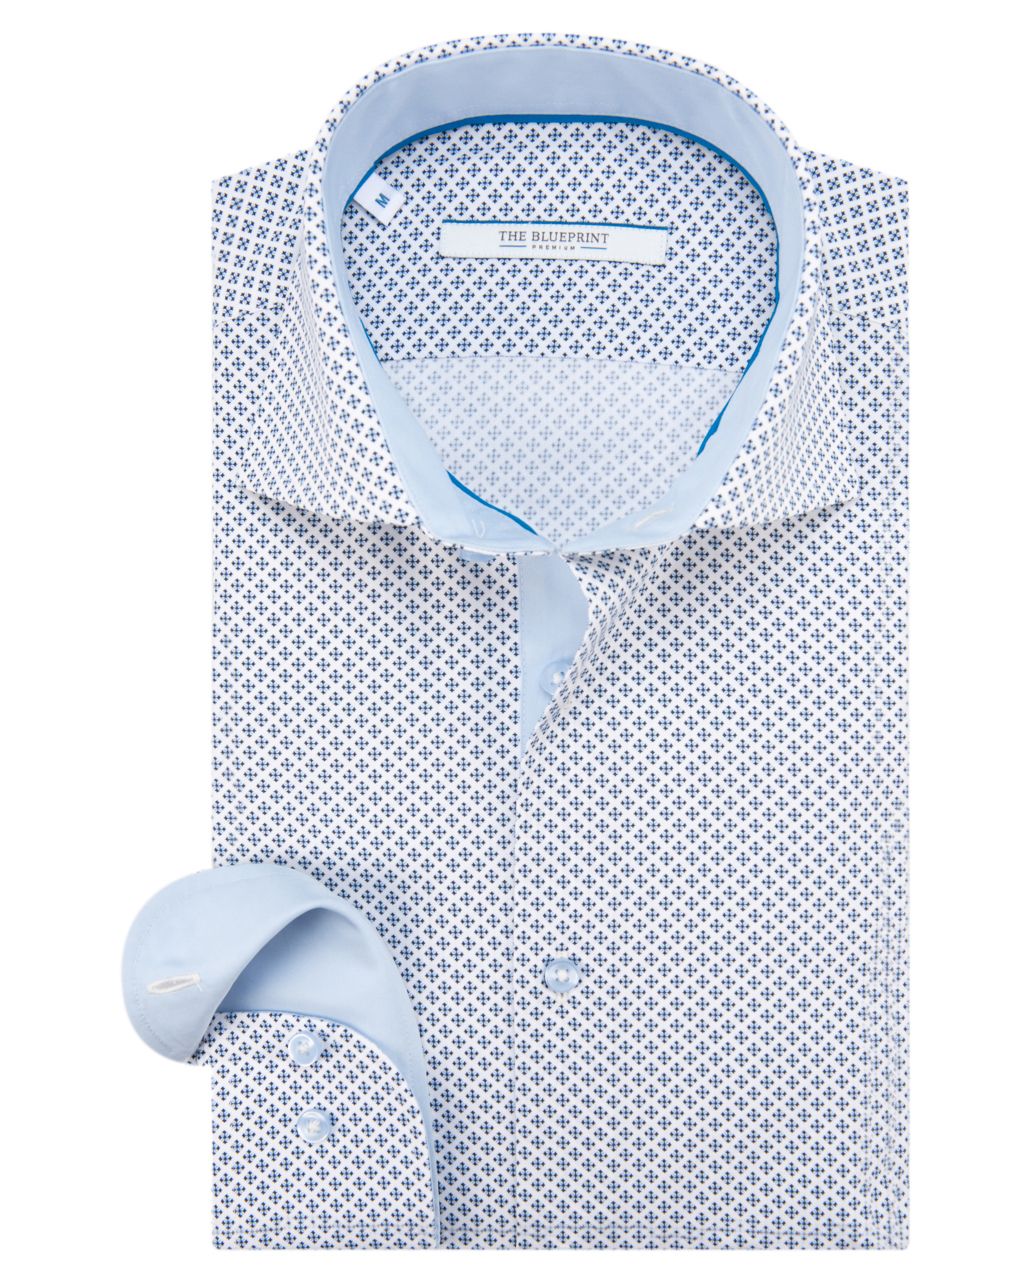 The BLUEPRINT Premium Trendy overhemd LM Lichtblauw 053910-001-L